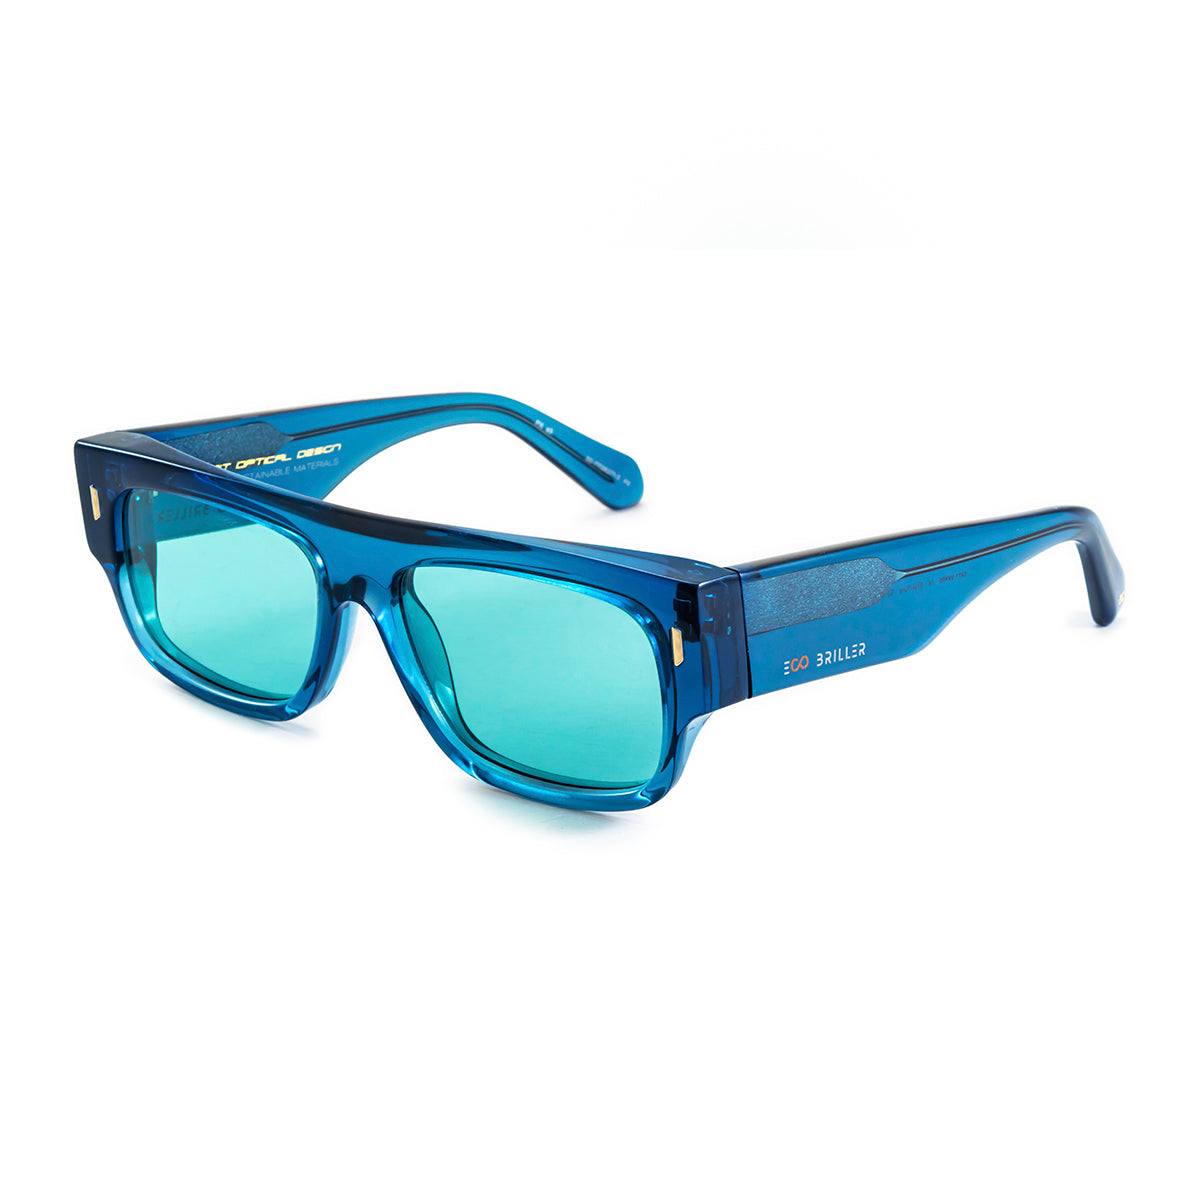 Anteojos De Sol Glasgow Premium Series Translucido Azul Lente Turquesa Eco Sustentable